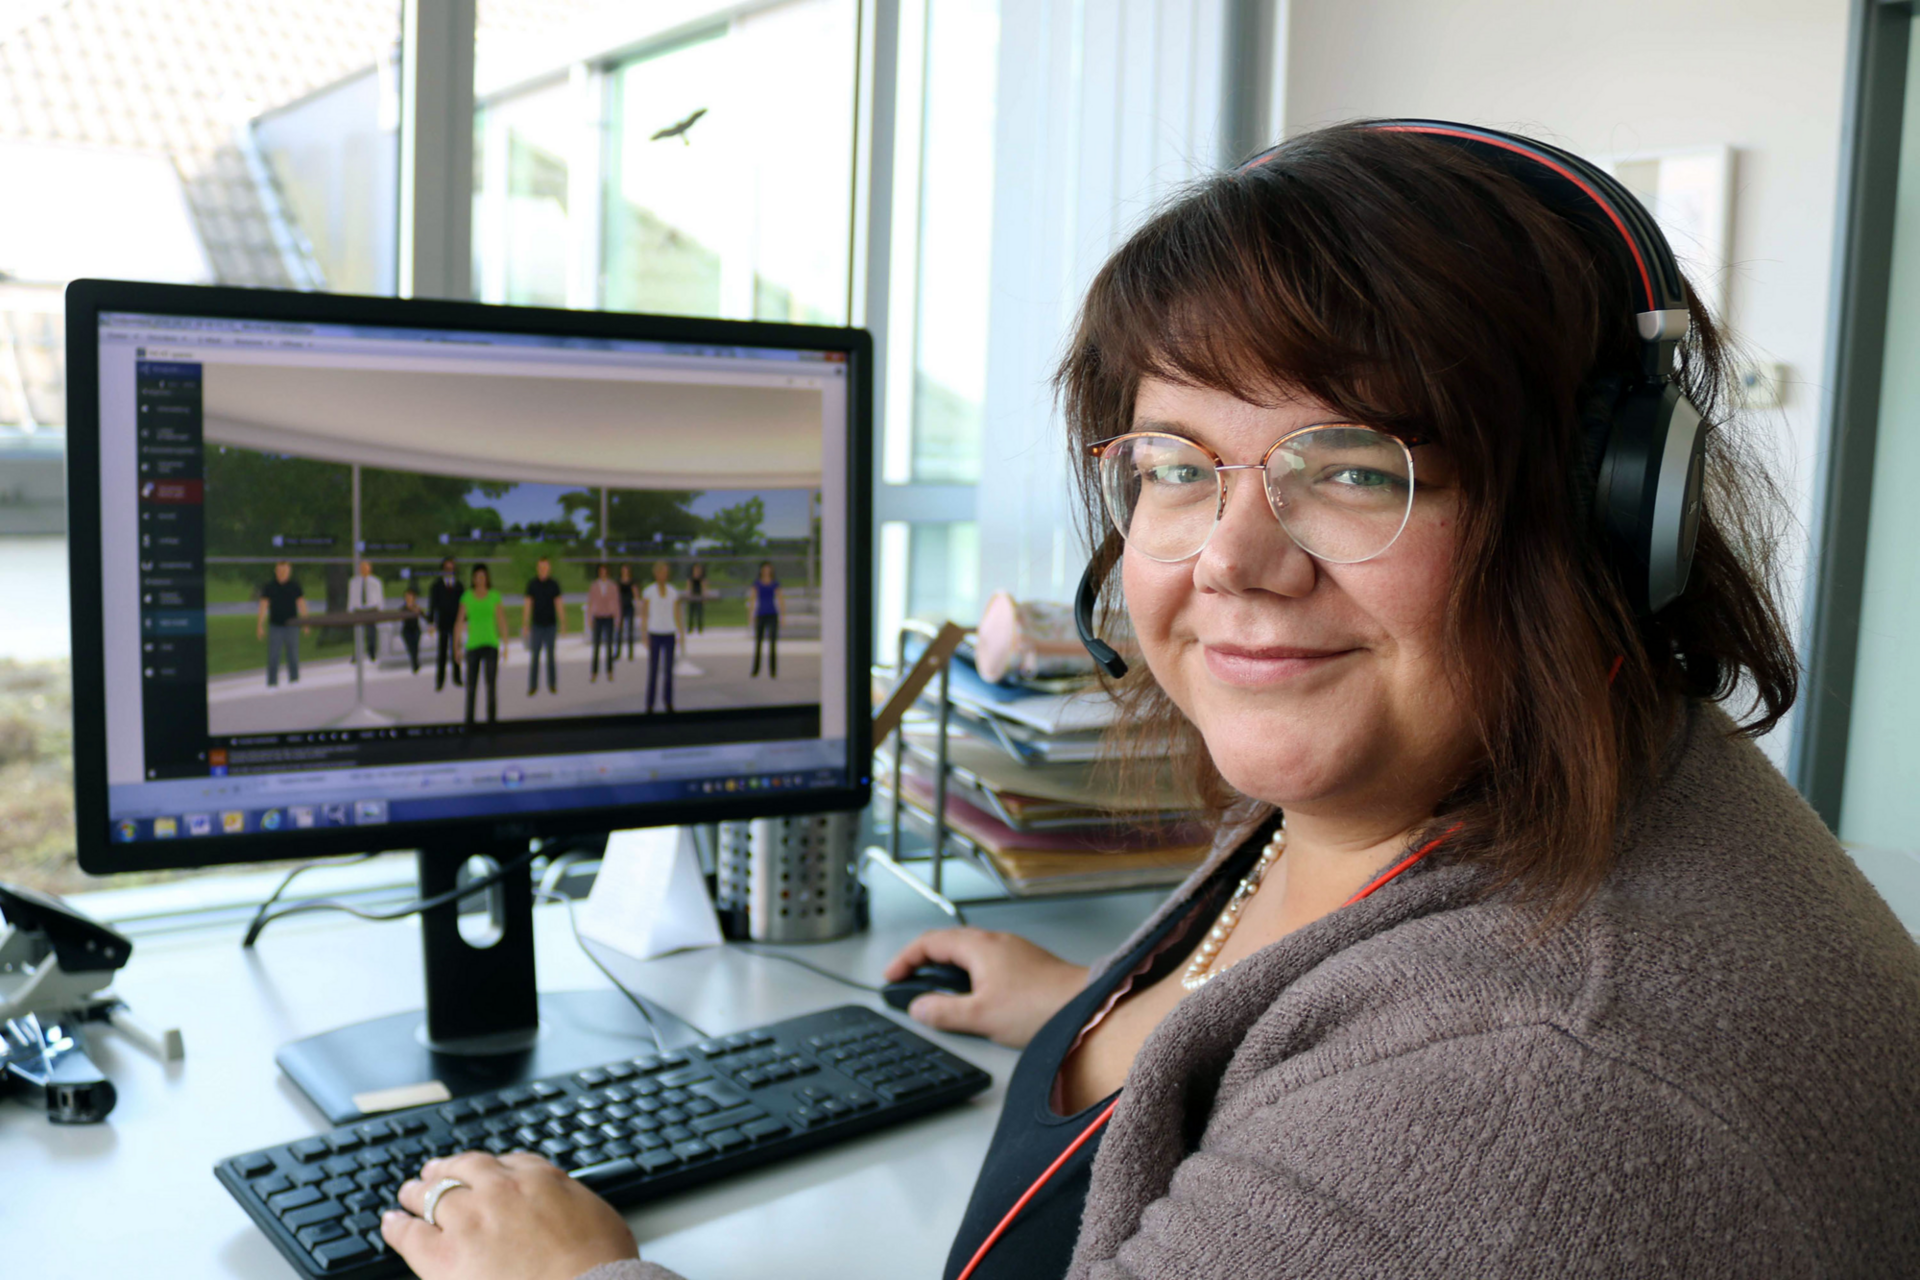 Johanna Krahnke vom Fachdienst Personalentwicklung beim Landkreis Kassel bewegt sich zusammen mit den Teilnehmern der Weiterbildung in der virtuellen Welt.